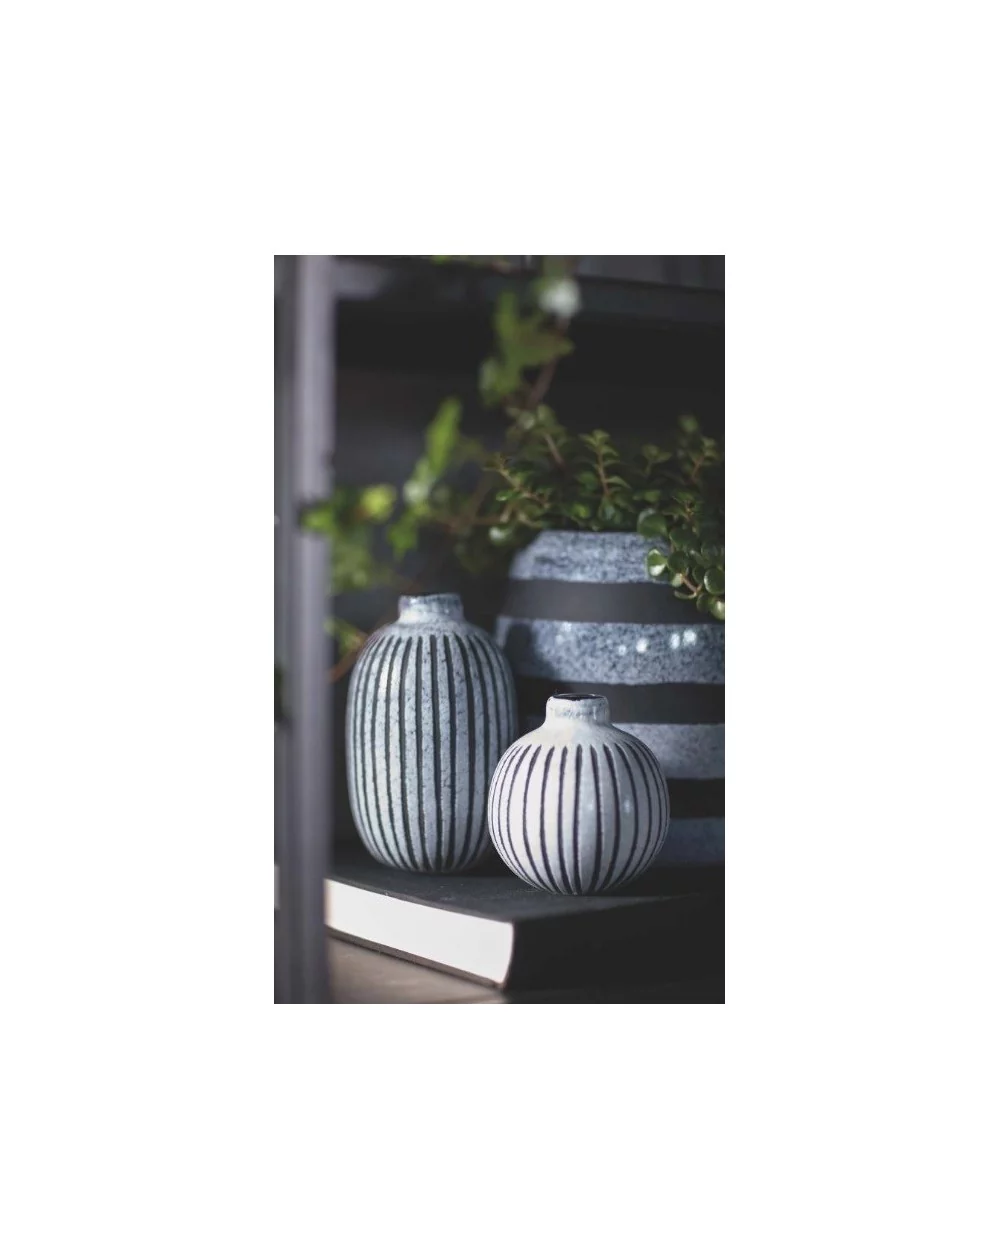 Sklenená mini váza SENWE, oval, grey